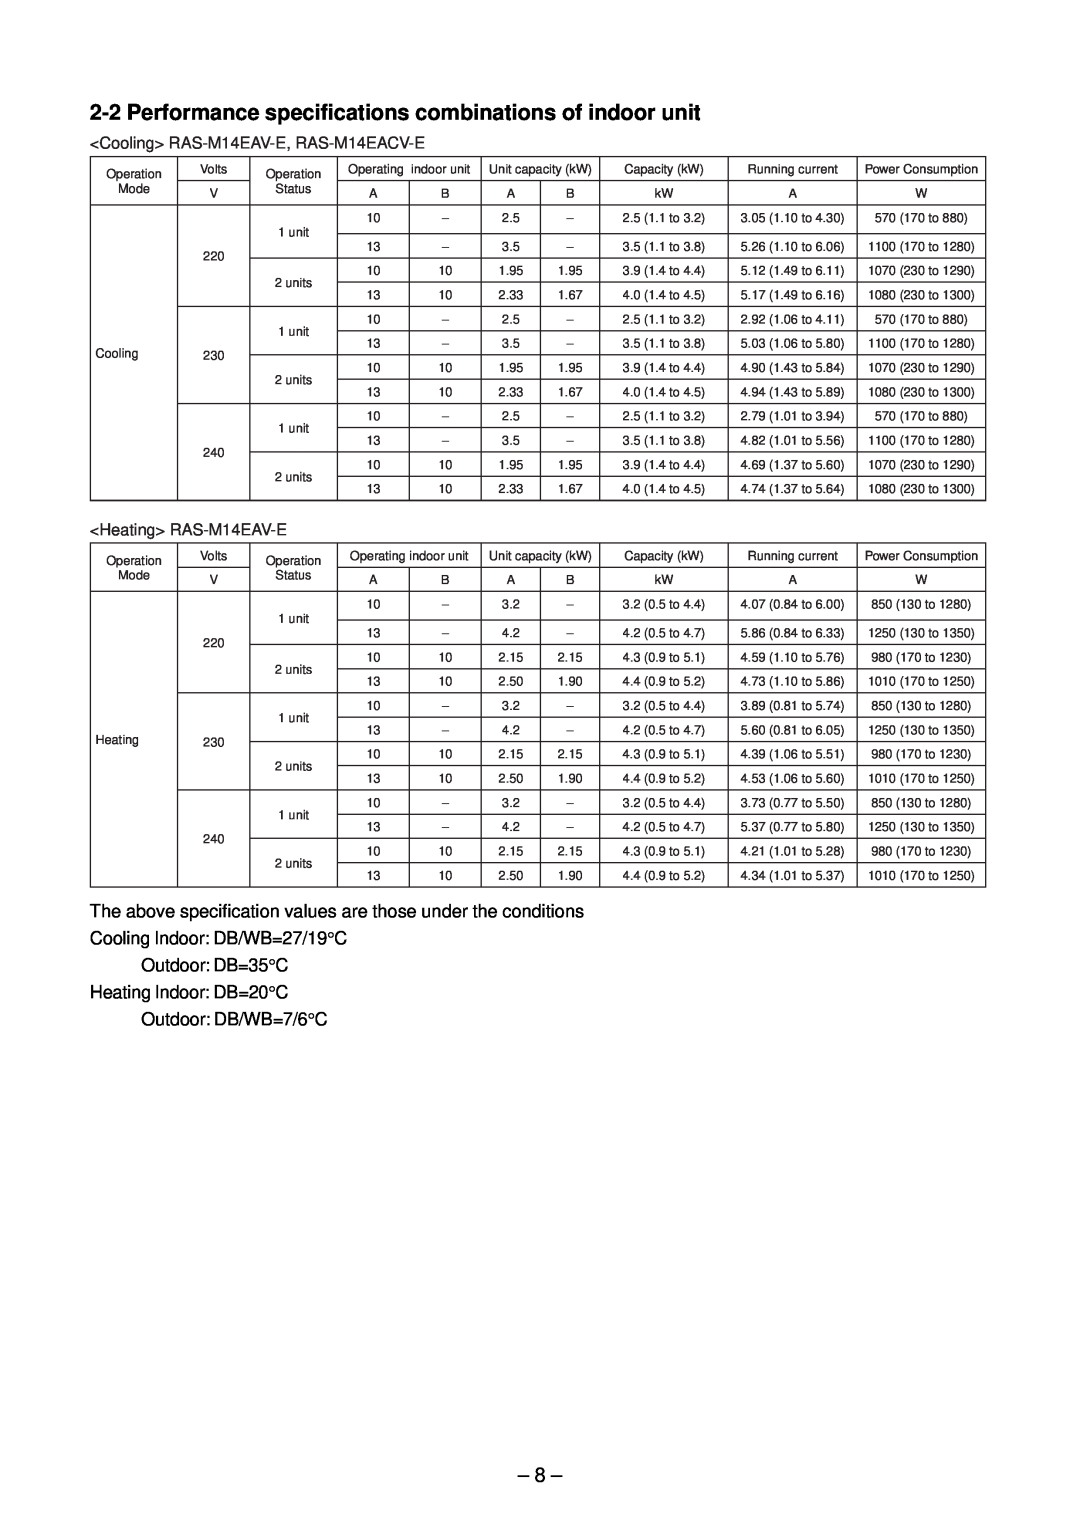 Toshiba RAS-B10EKVP-E 8, Cooling Indoor: DB/WB=27/19C Outdoor: DB=35C, Heating Indoor: DB=20C Outdoor: DB/WB=7/6C 